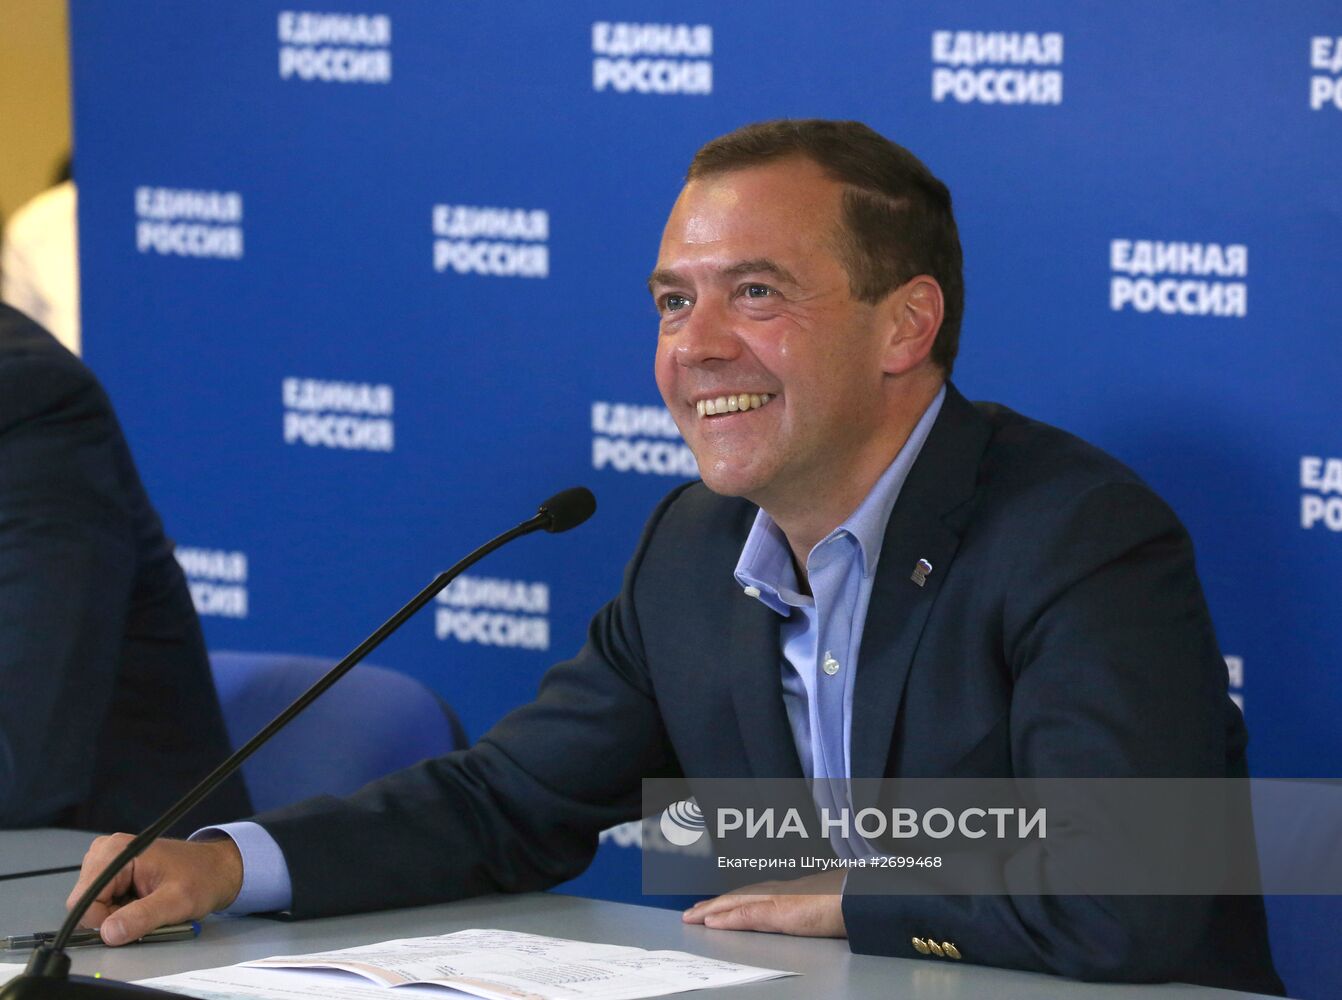 Дмитрий Медведев провёл видеоконференцию с представителями партии "Единая Россия" в регионах РФ, в которых прошли выборы